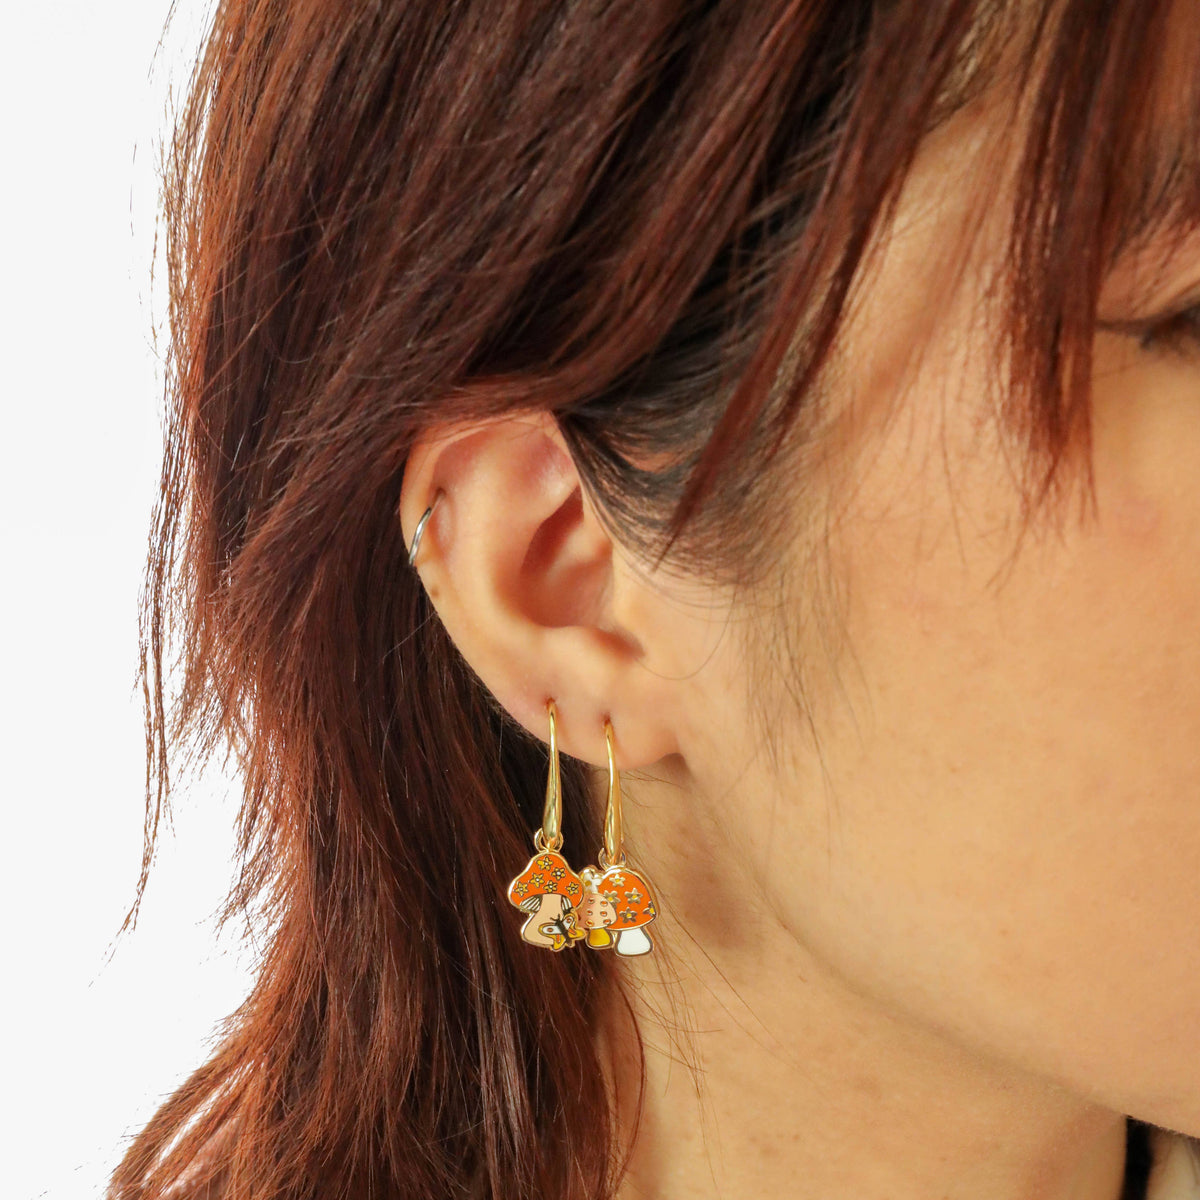 Mushroom Butterfly Earrings 18k Gold Gilt Enamel - 580 Threads